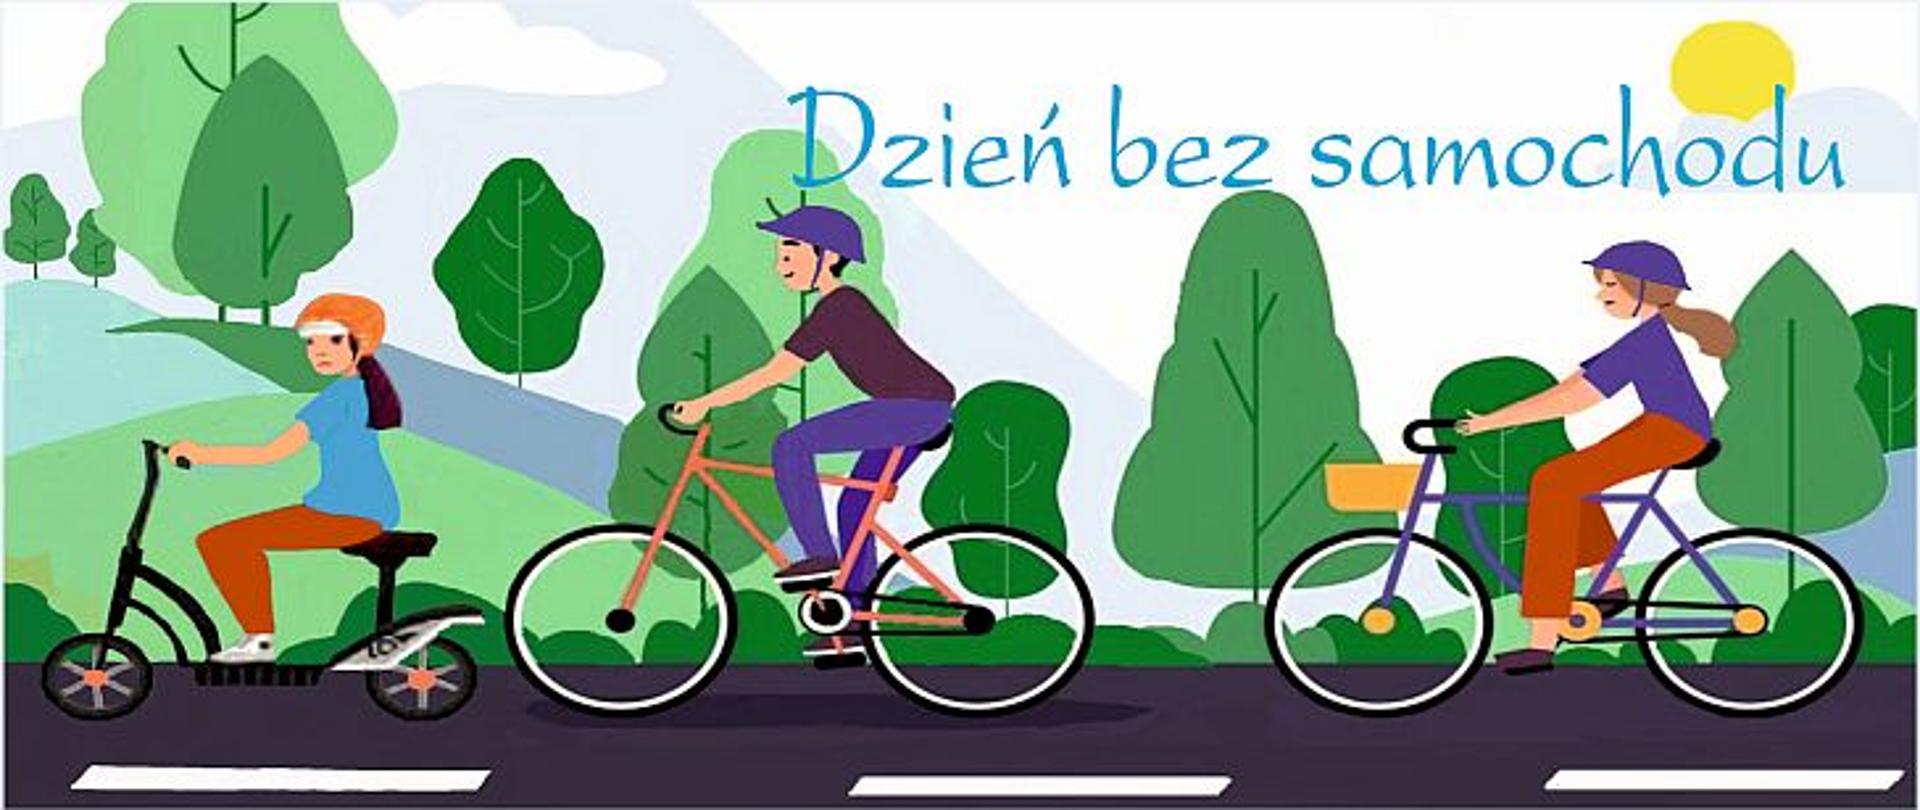 Grafika przedstawia kobietę jadącą po ulicy na hulajnodze, za nią mężczyznę jadącego na rowerze, następnie kobietę jadąca na rowerze. W tle widać drzewa. Na górze znajduje się napis: Dzień bez samochodu.